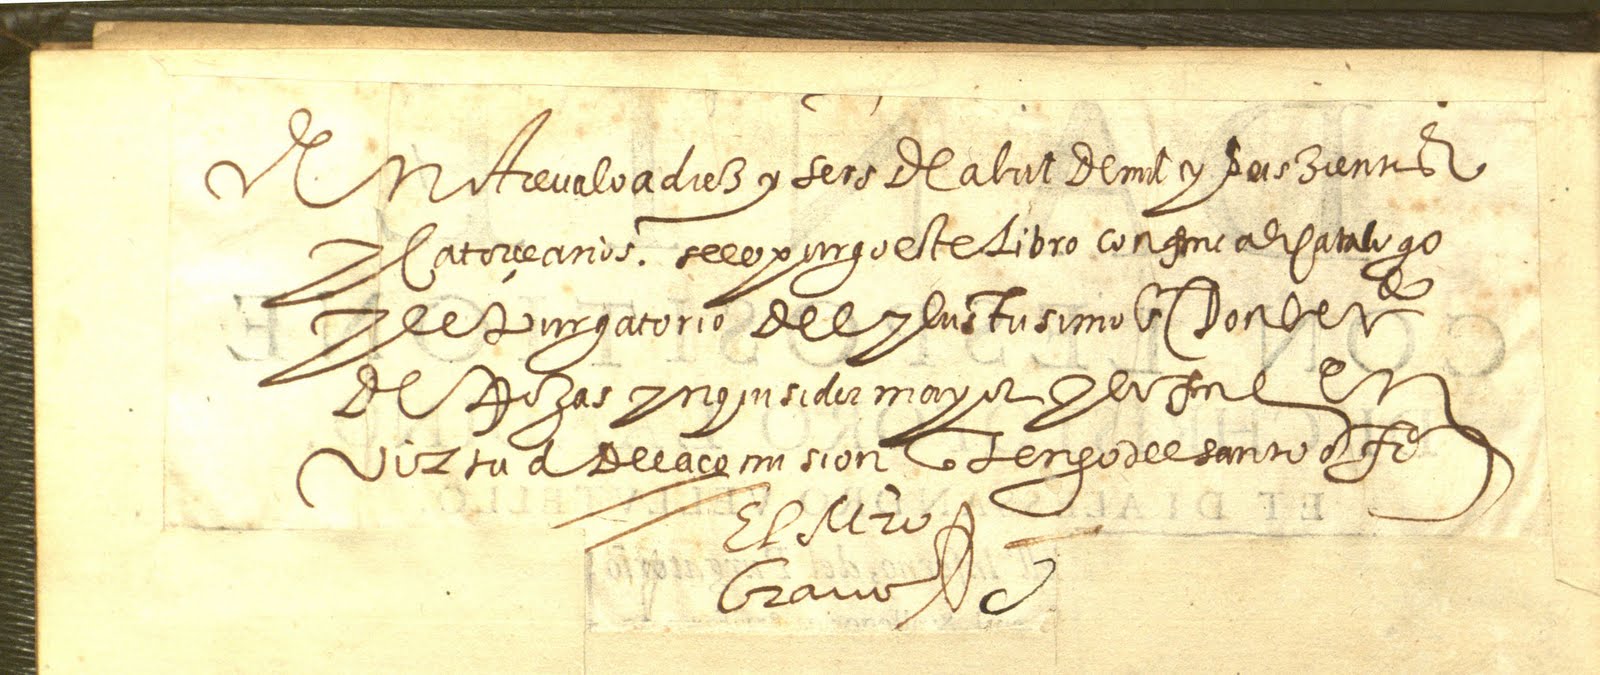 Inscription in the book